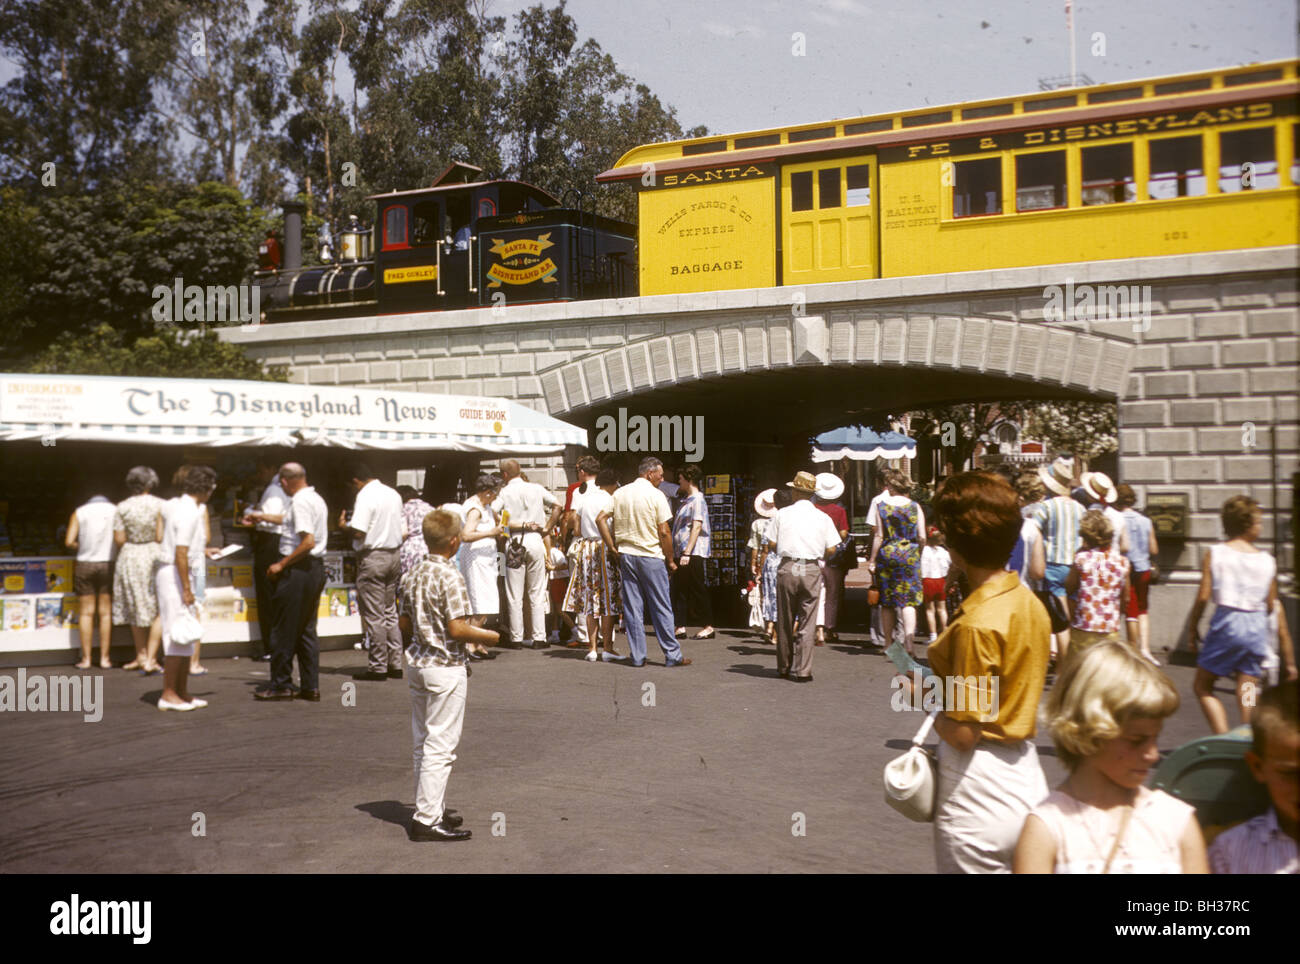 Santa Fe et Disney Disneyland train et le kiosque. Disneyland locations de Kodachrome de 1962. Banque D'Images